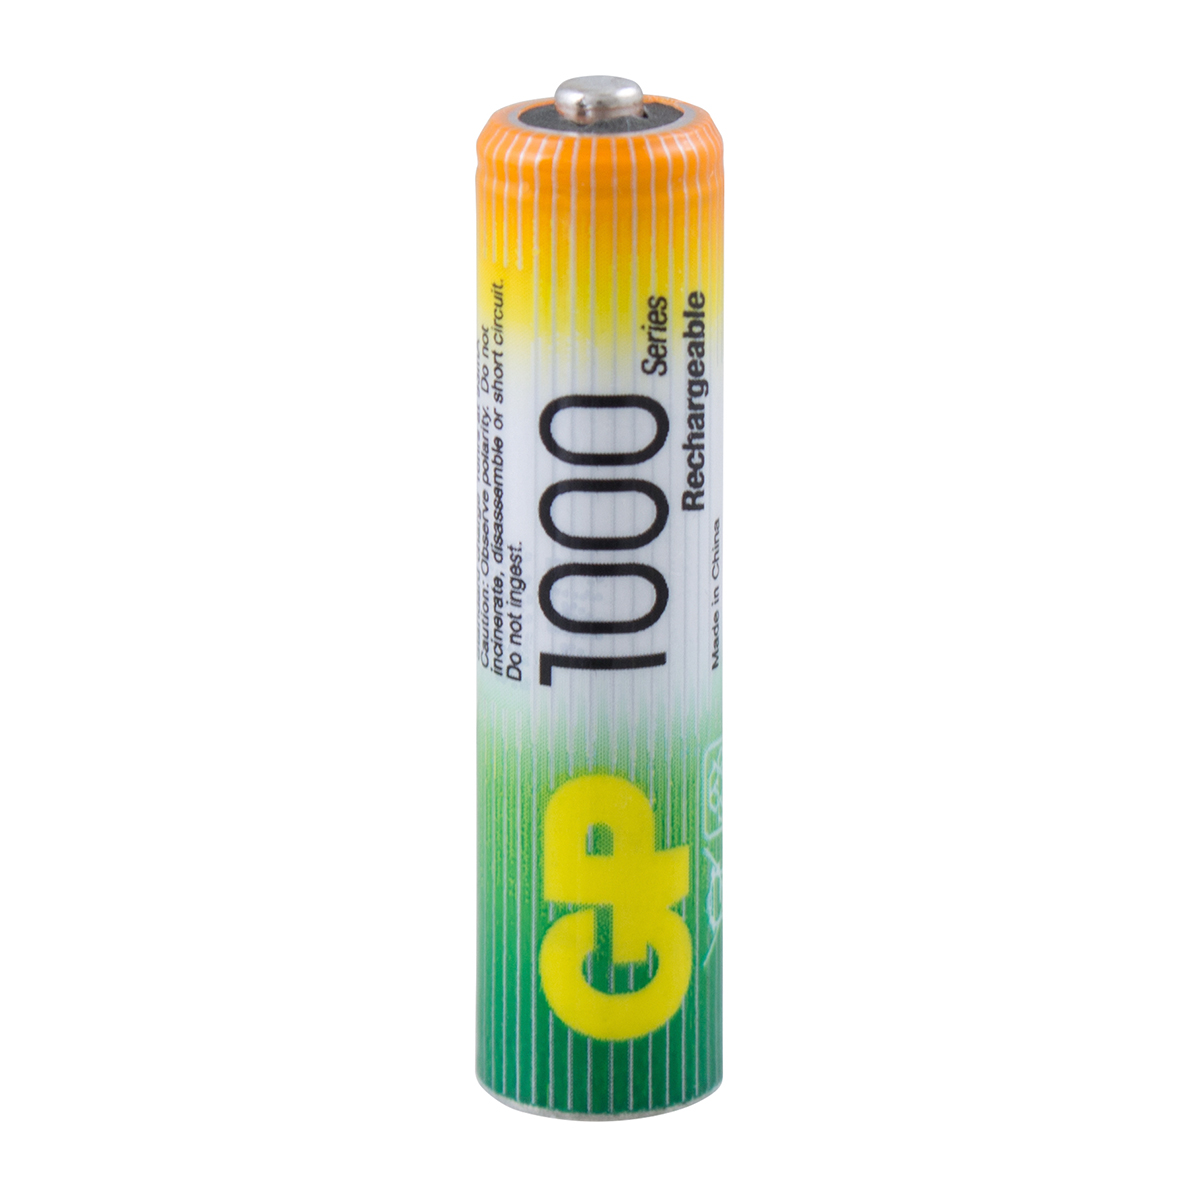 Аккумулятор gp rechargeable 100aaahc4/2-2cr6  тип ааа, 1000 мач (6 шт. в блистере) (1/6/60)